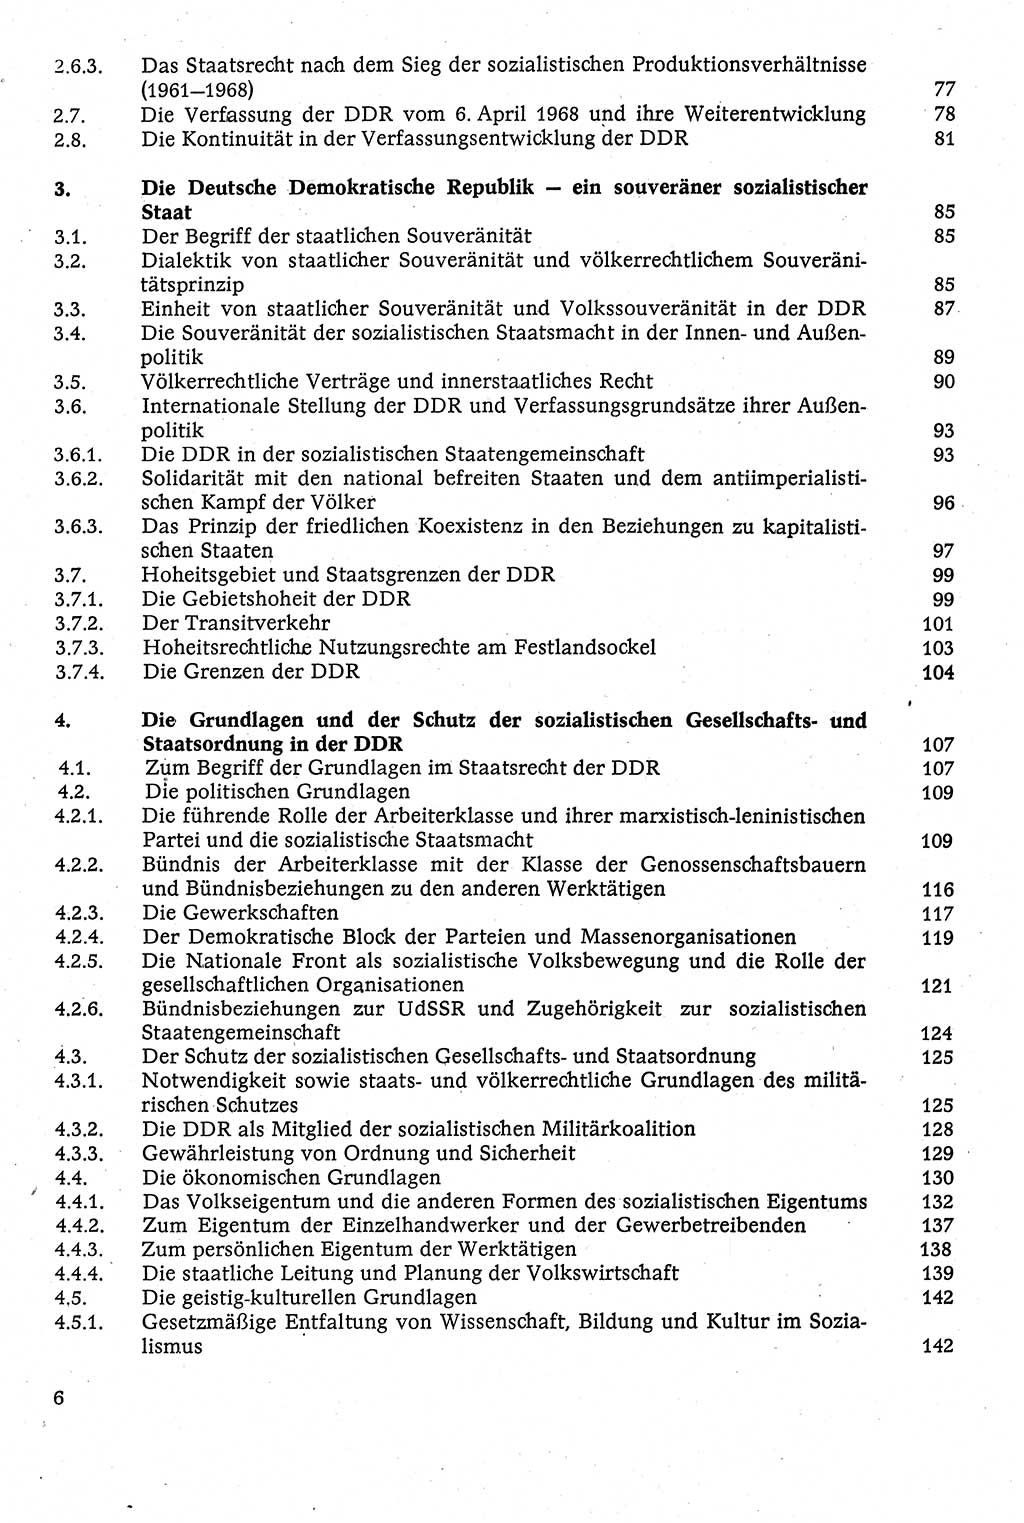 Staatsrecht der DDR [Deutsche Demokratische Republik (DDR)], Lehrbuch 1984, Seite 6 (St.-R. DDR Lb. 1984, S. 6)